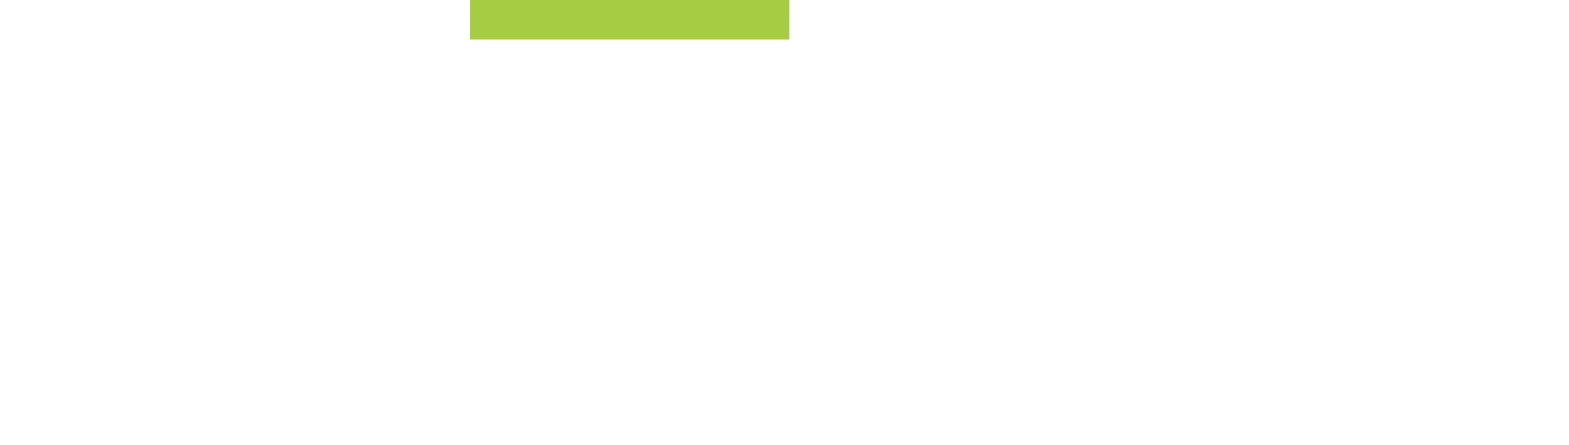 Inuvo Logo groß für dunkle Hintergründe (transparentes PNG)